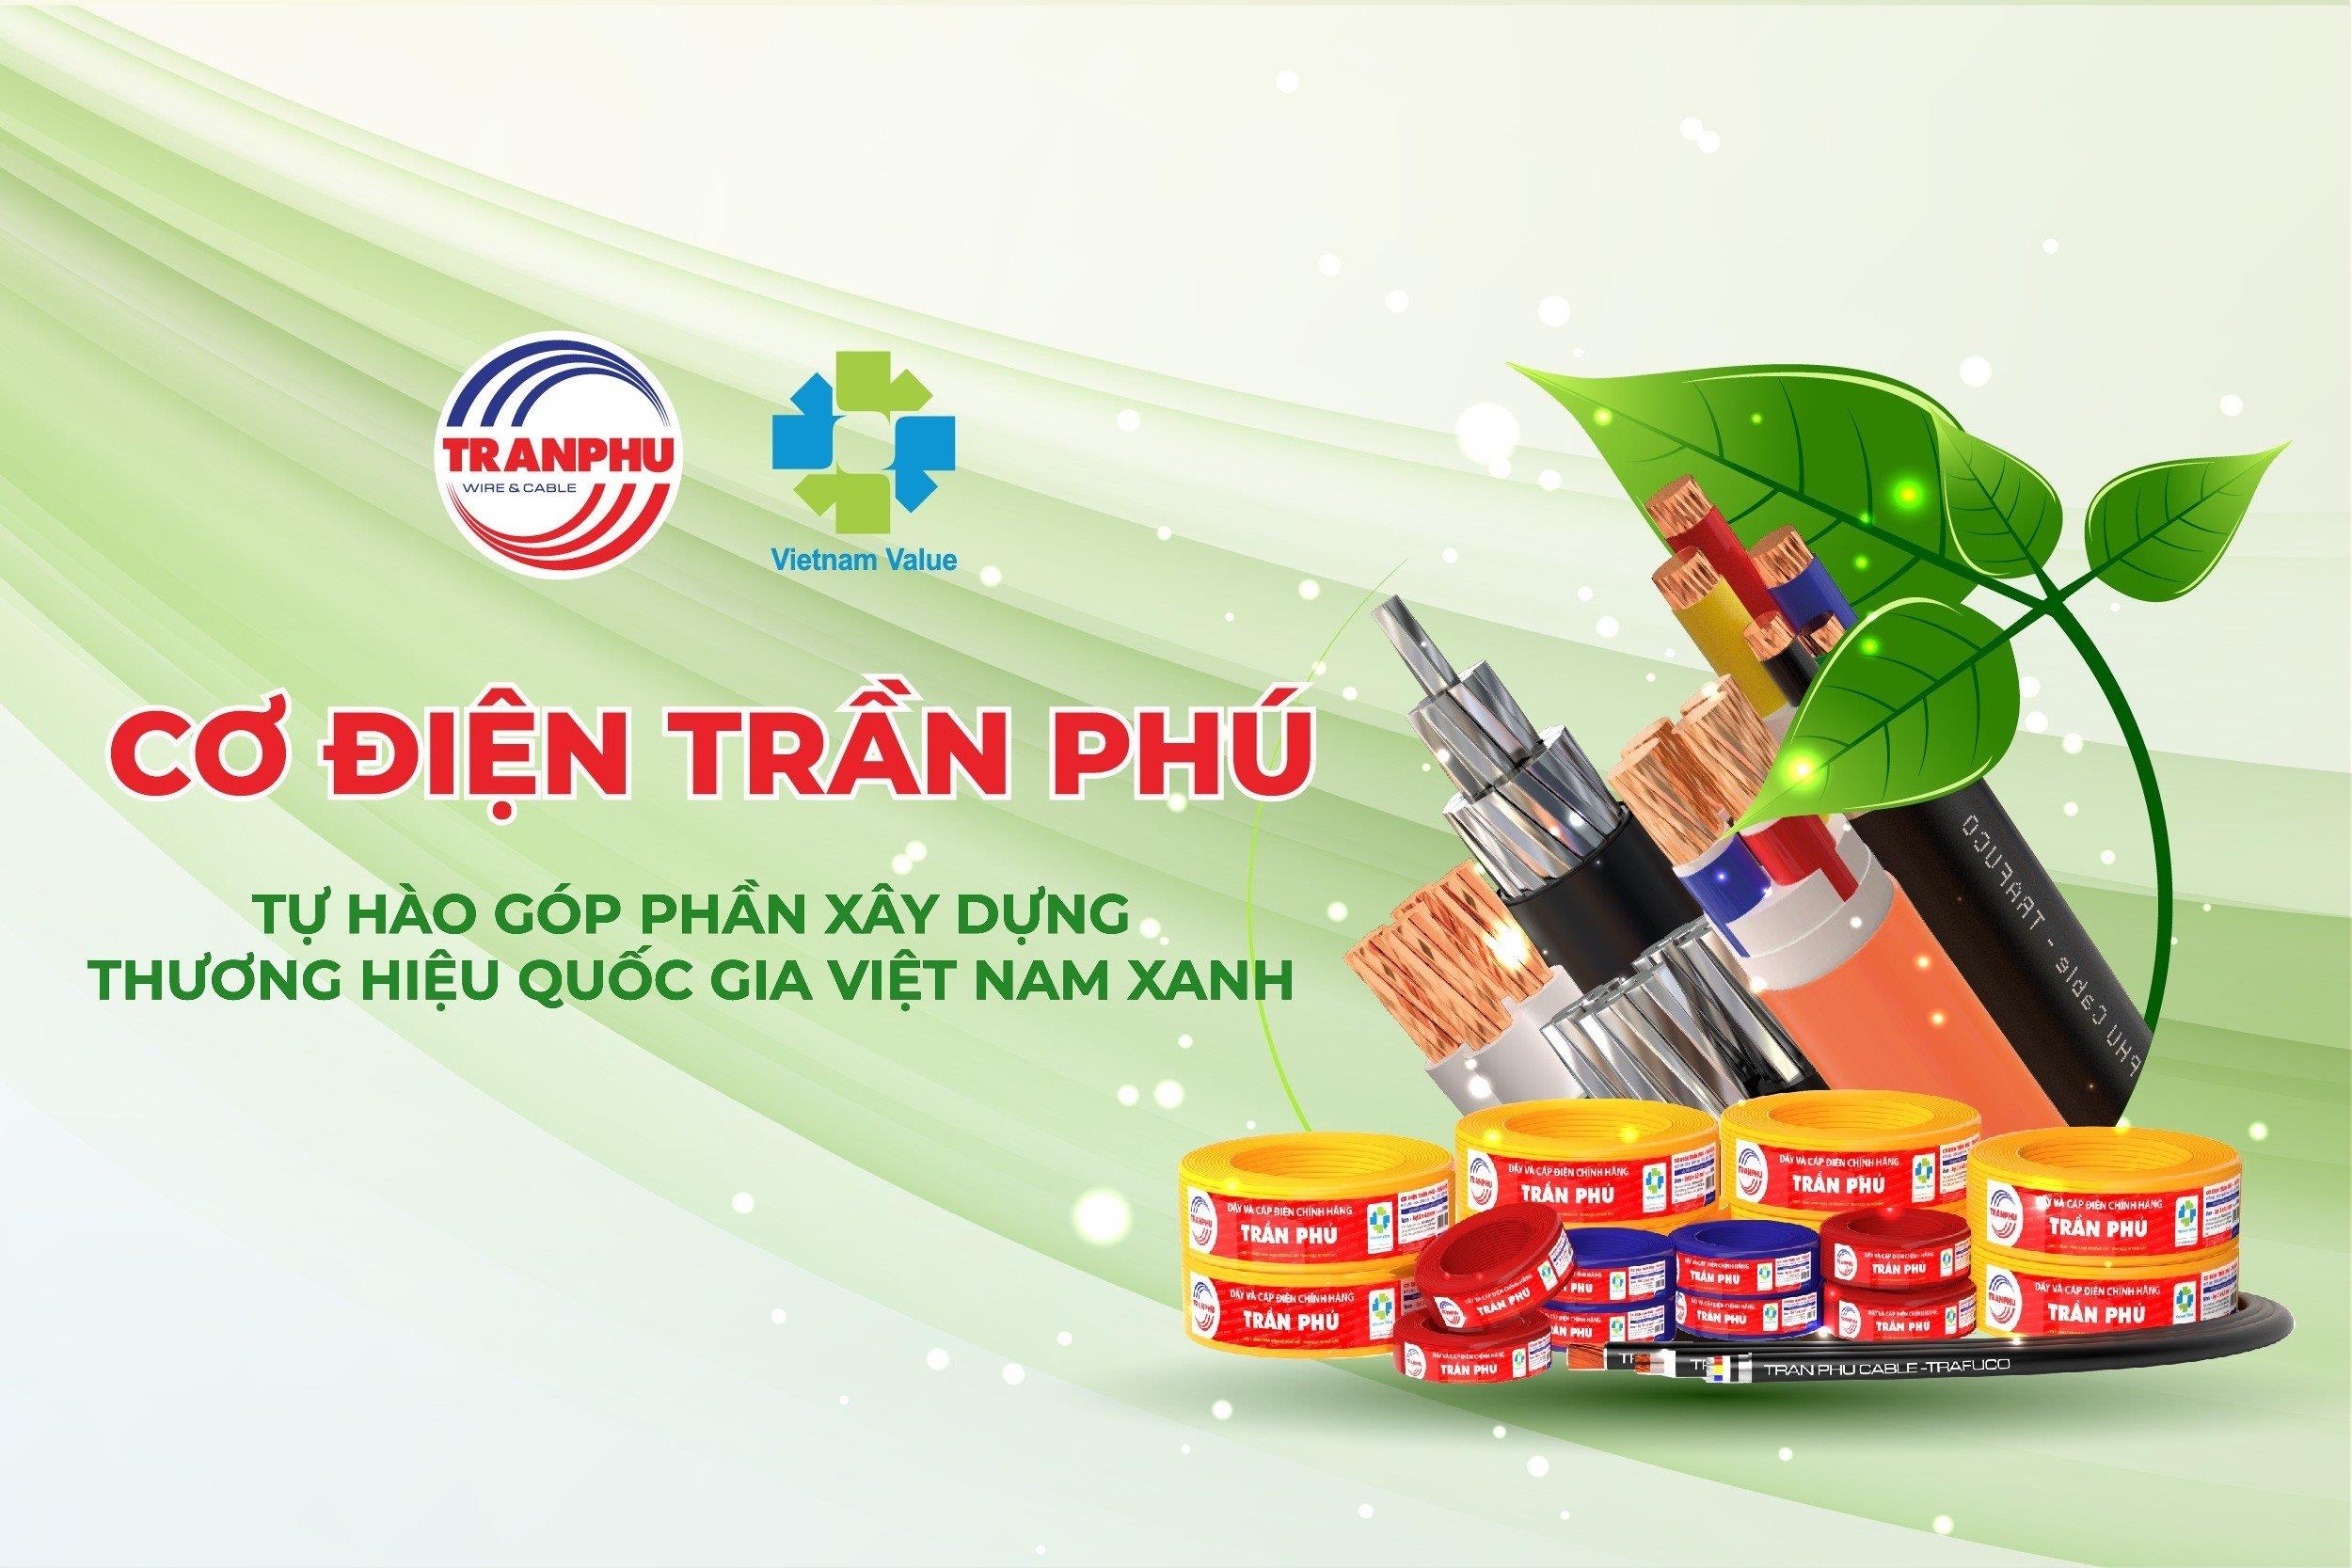 Cơ điện Trần Phú tự hào góp phần xây dựng thương hiệu quốc gia Việt Nam xanh